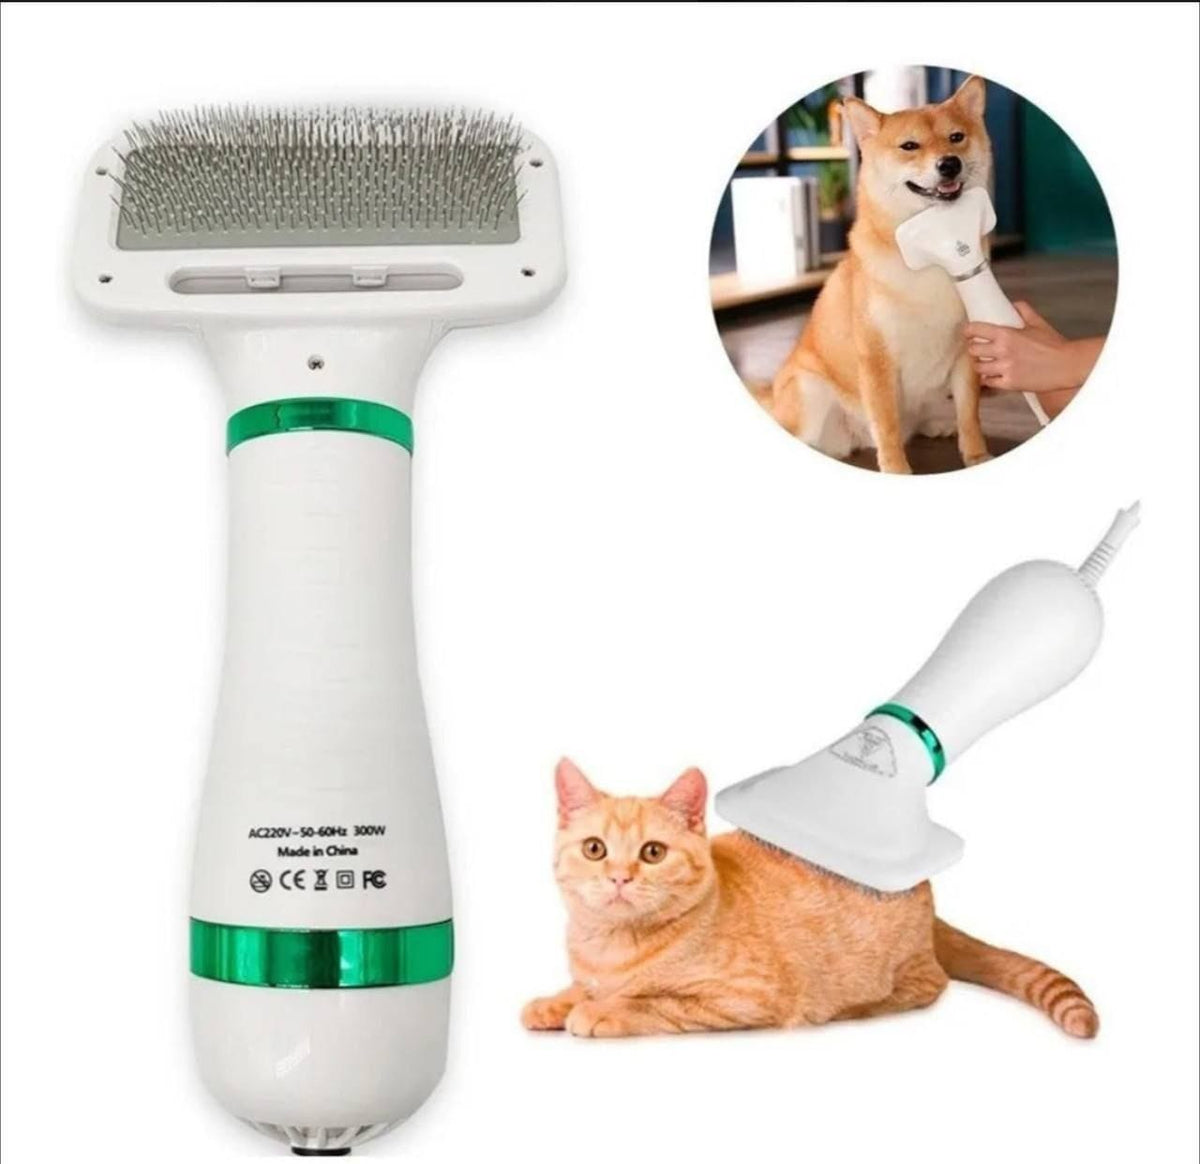 2 en 1: Cepillo Secador para Mascotas - Simplifica el Cuidado de tu Compañero Peludo